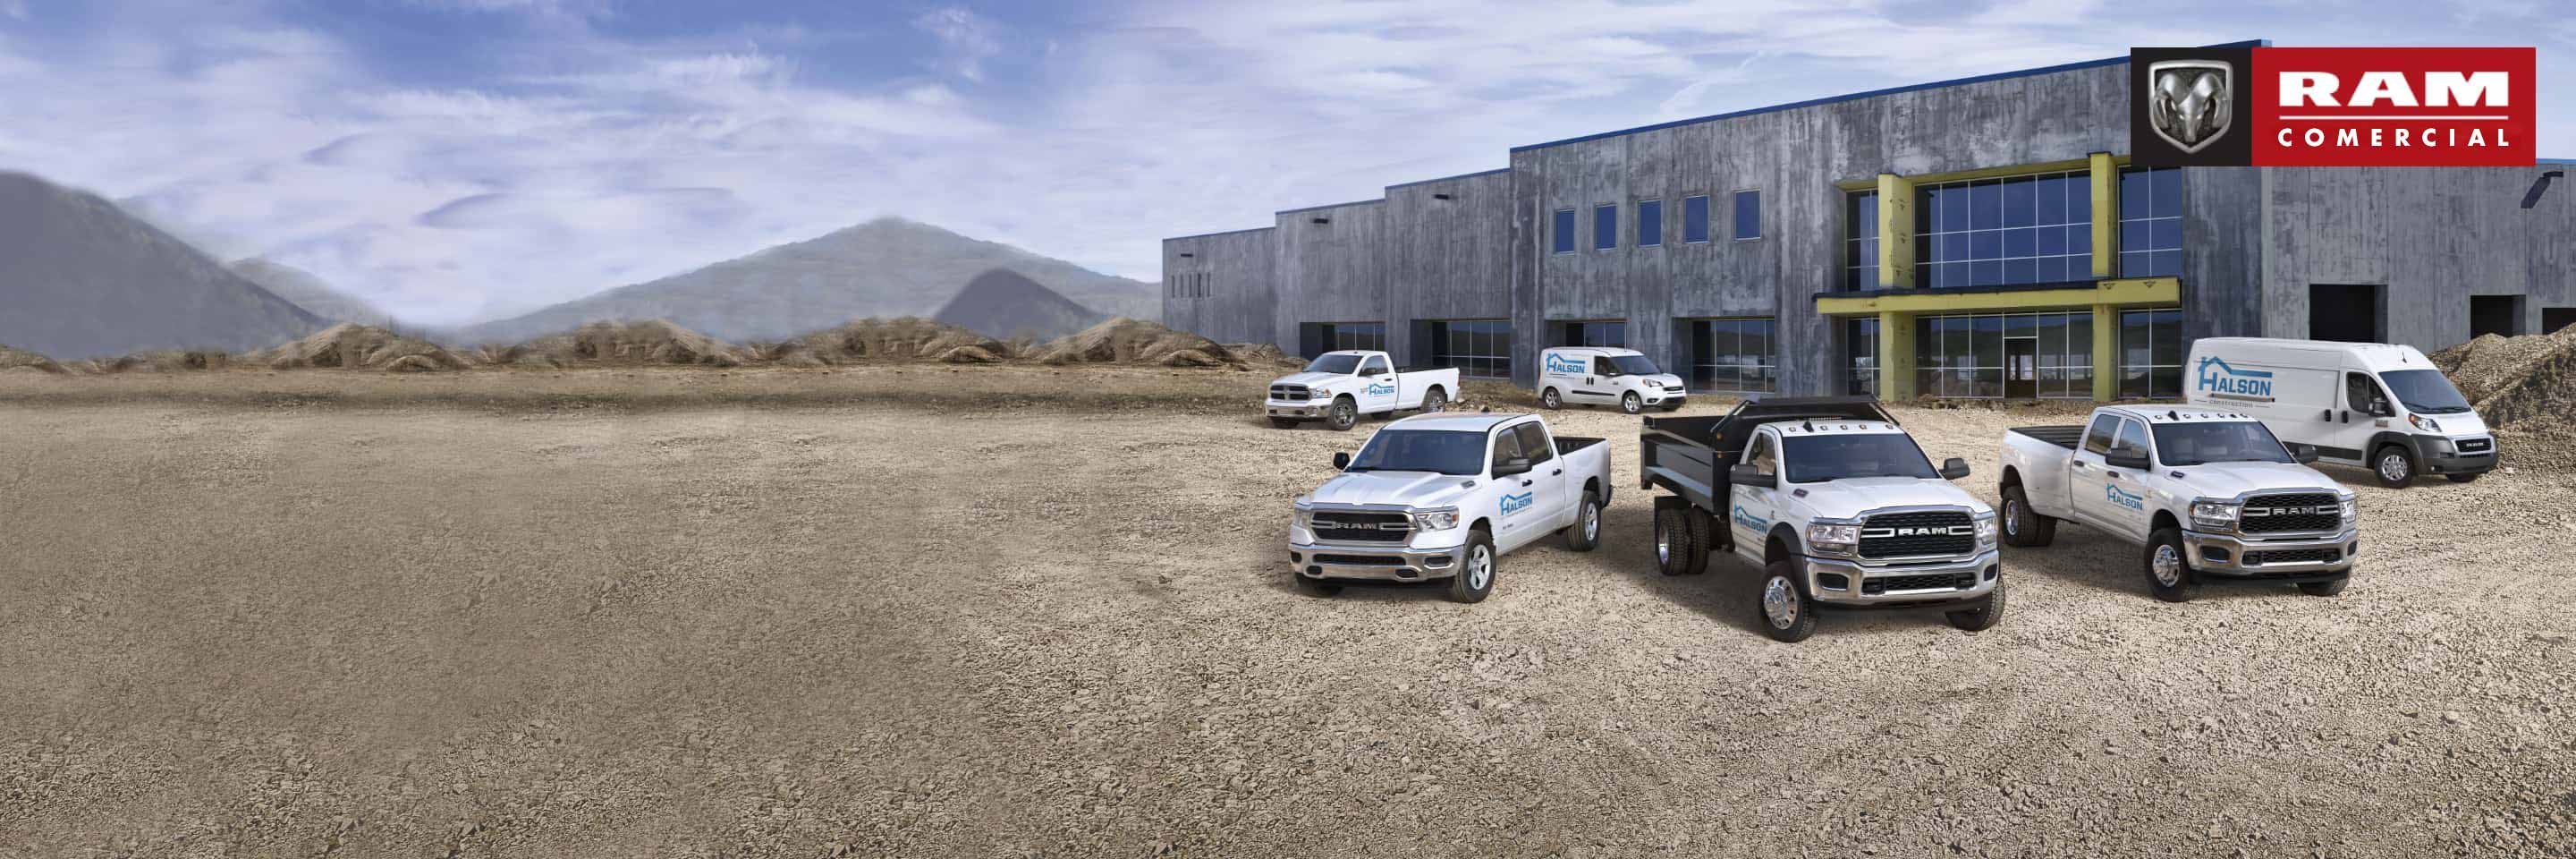 Una Ram 5500 SLT 2019 blanca equipada con carrocería de servicio estacionada en una obra de construcción residencial.